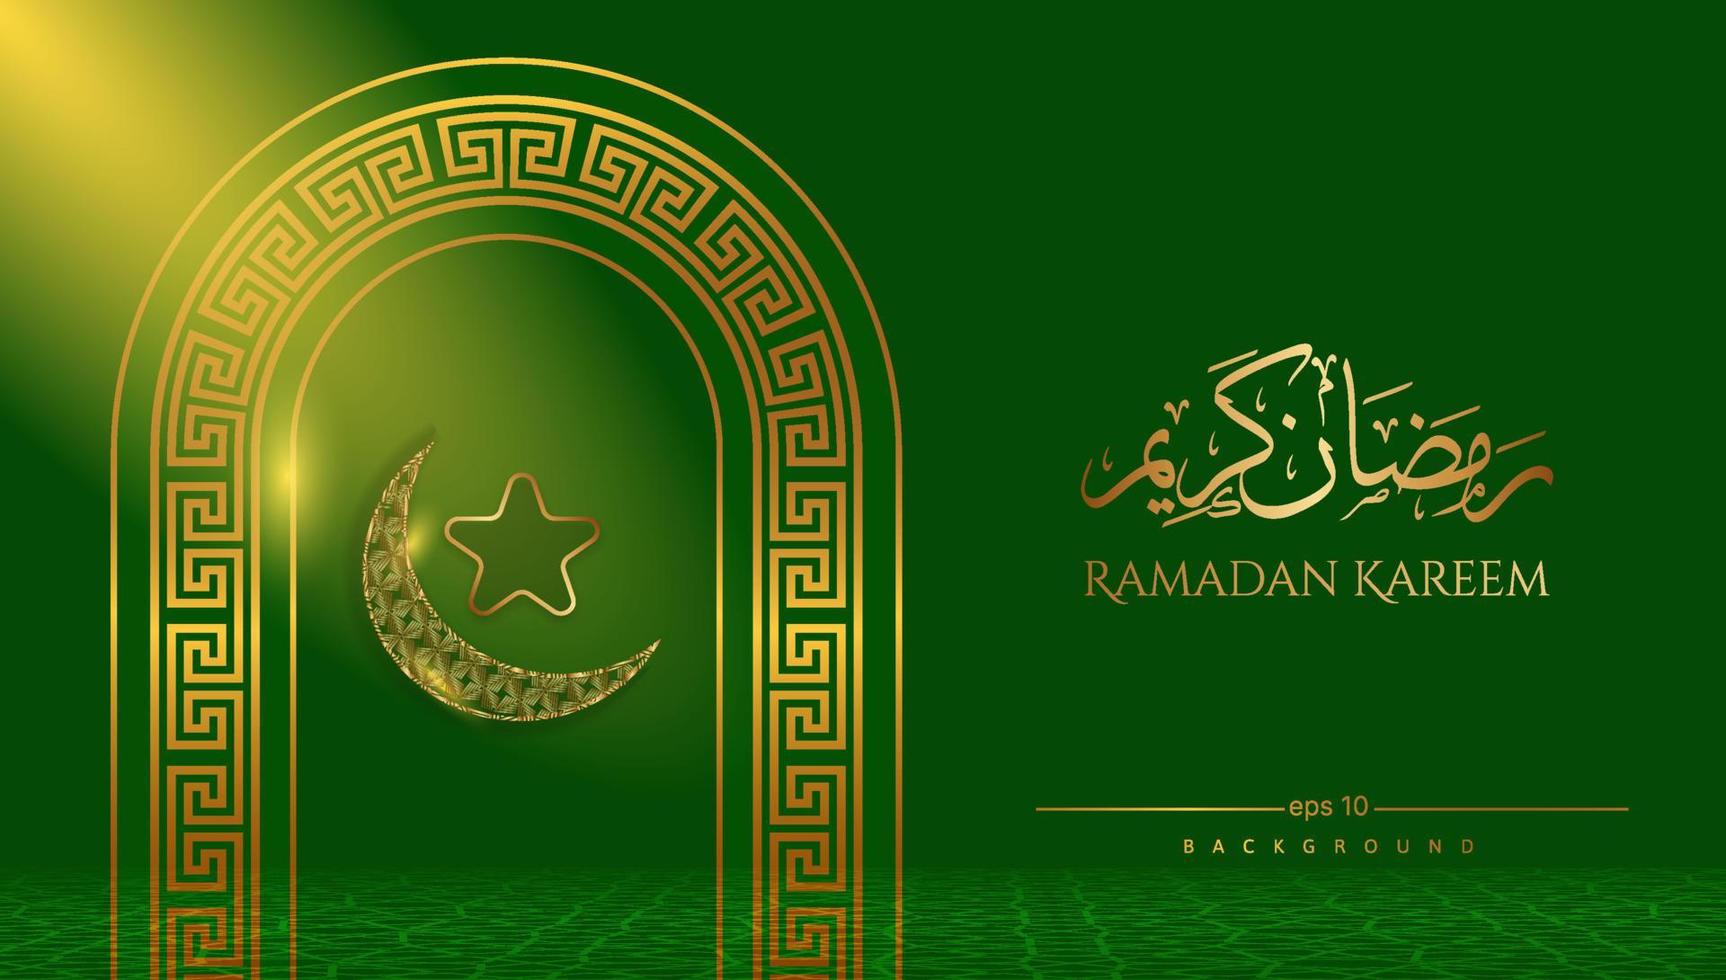 Ramadan kareem sfondo nel verde e oro con luce. islamico vettore illustrazione